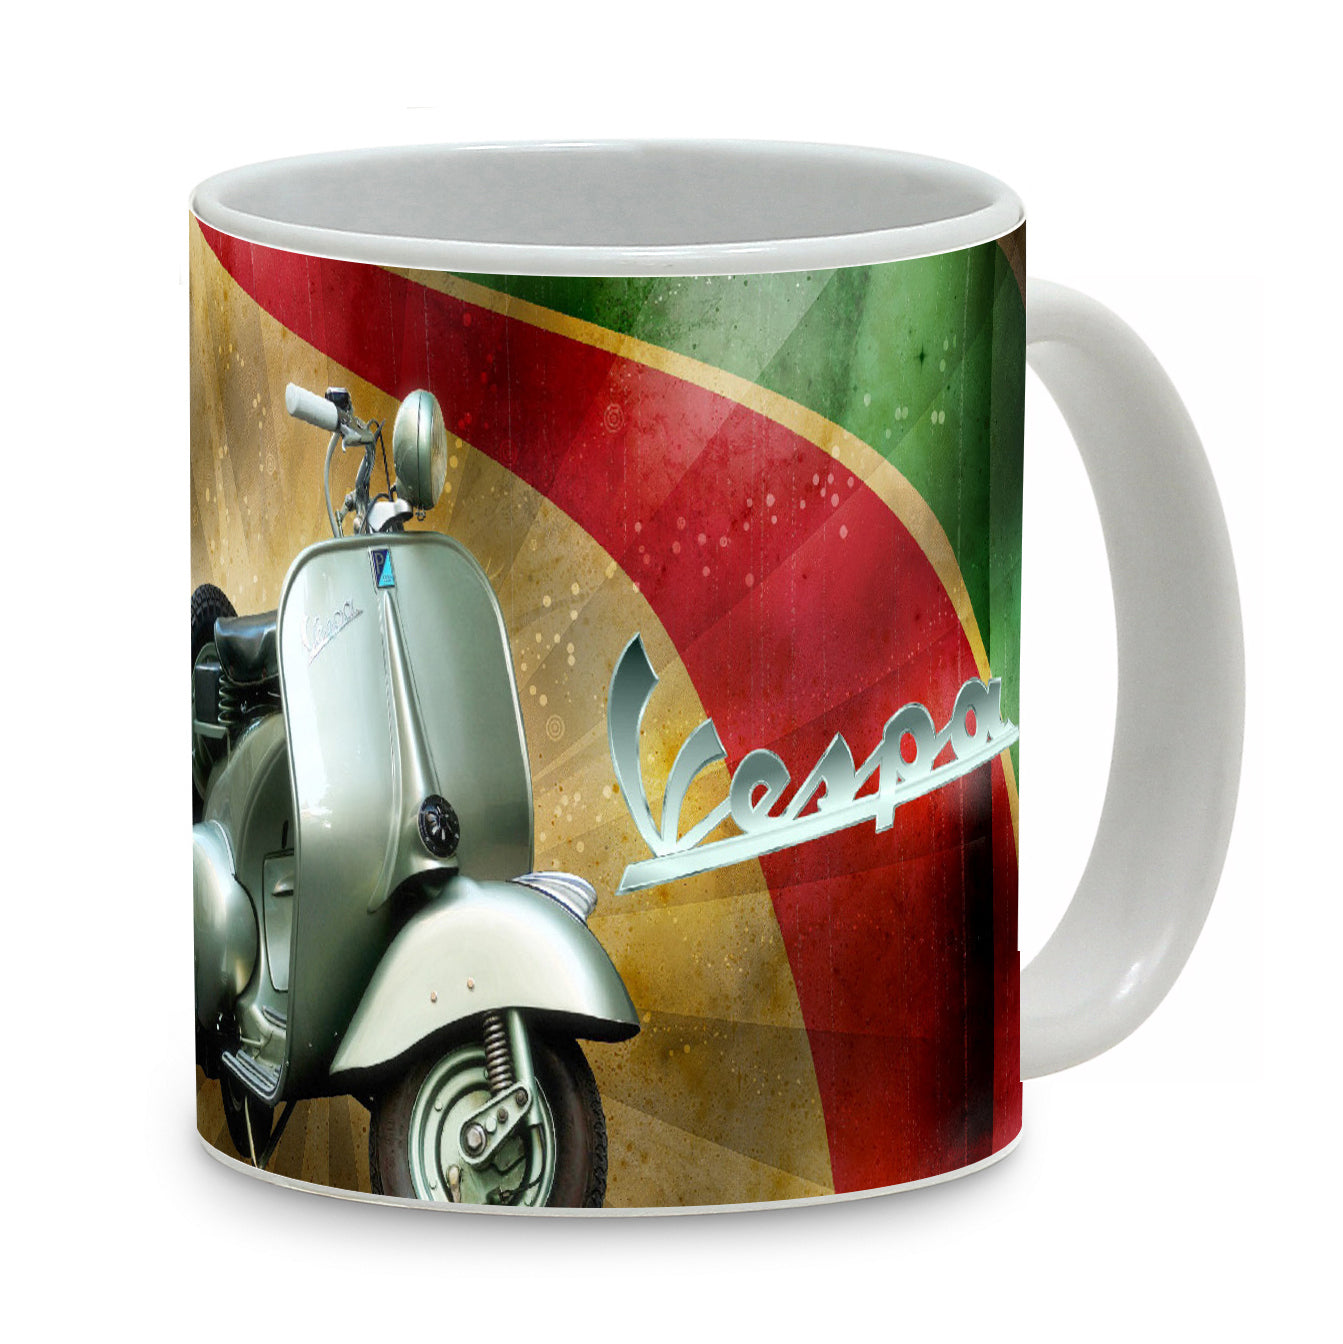 SUBLIMART: Bella Italia - Mug featuring Italian vintage posters (Vespa, Ciao Bella)